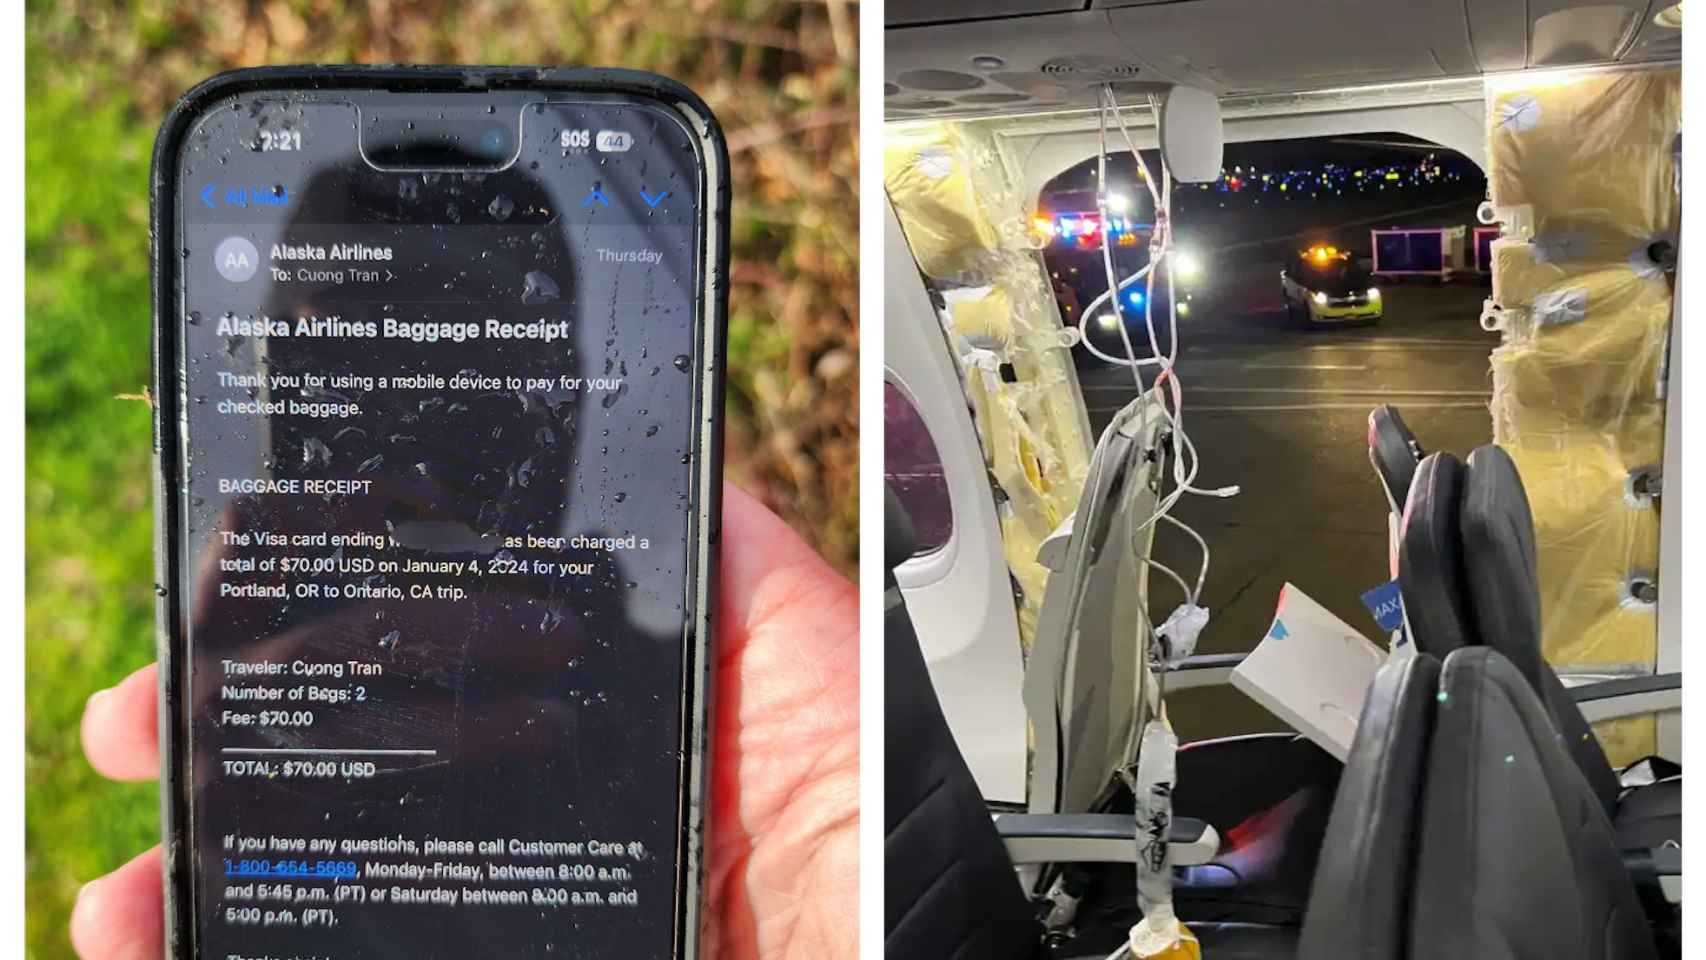 un iphone sobrevive a la caída desde el avión que perdió la puerta: ni un rasguño en la pantalla